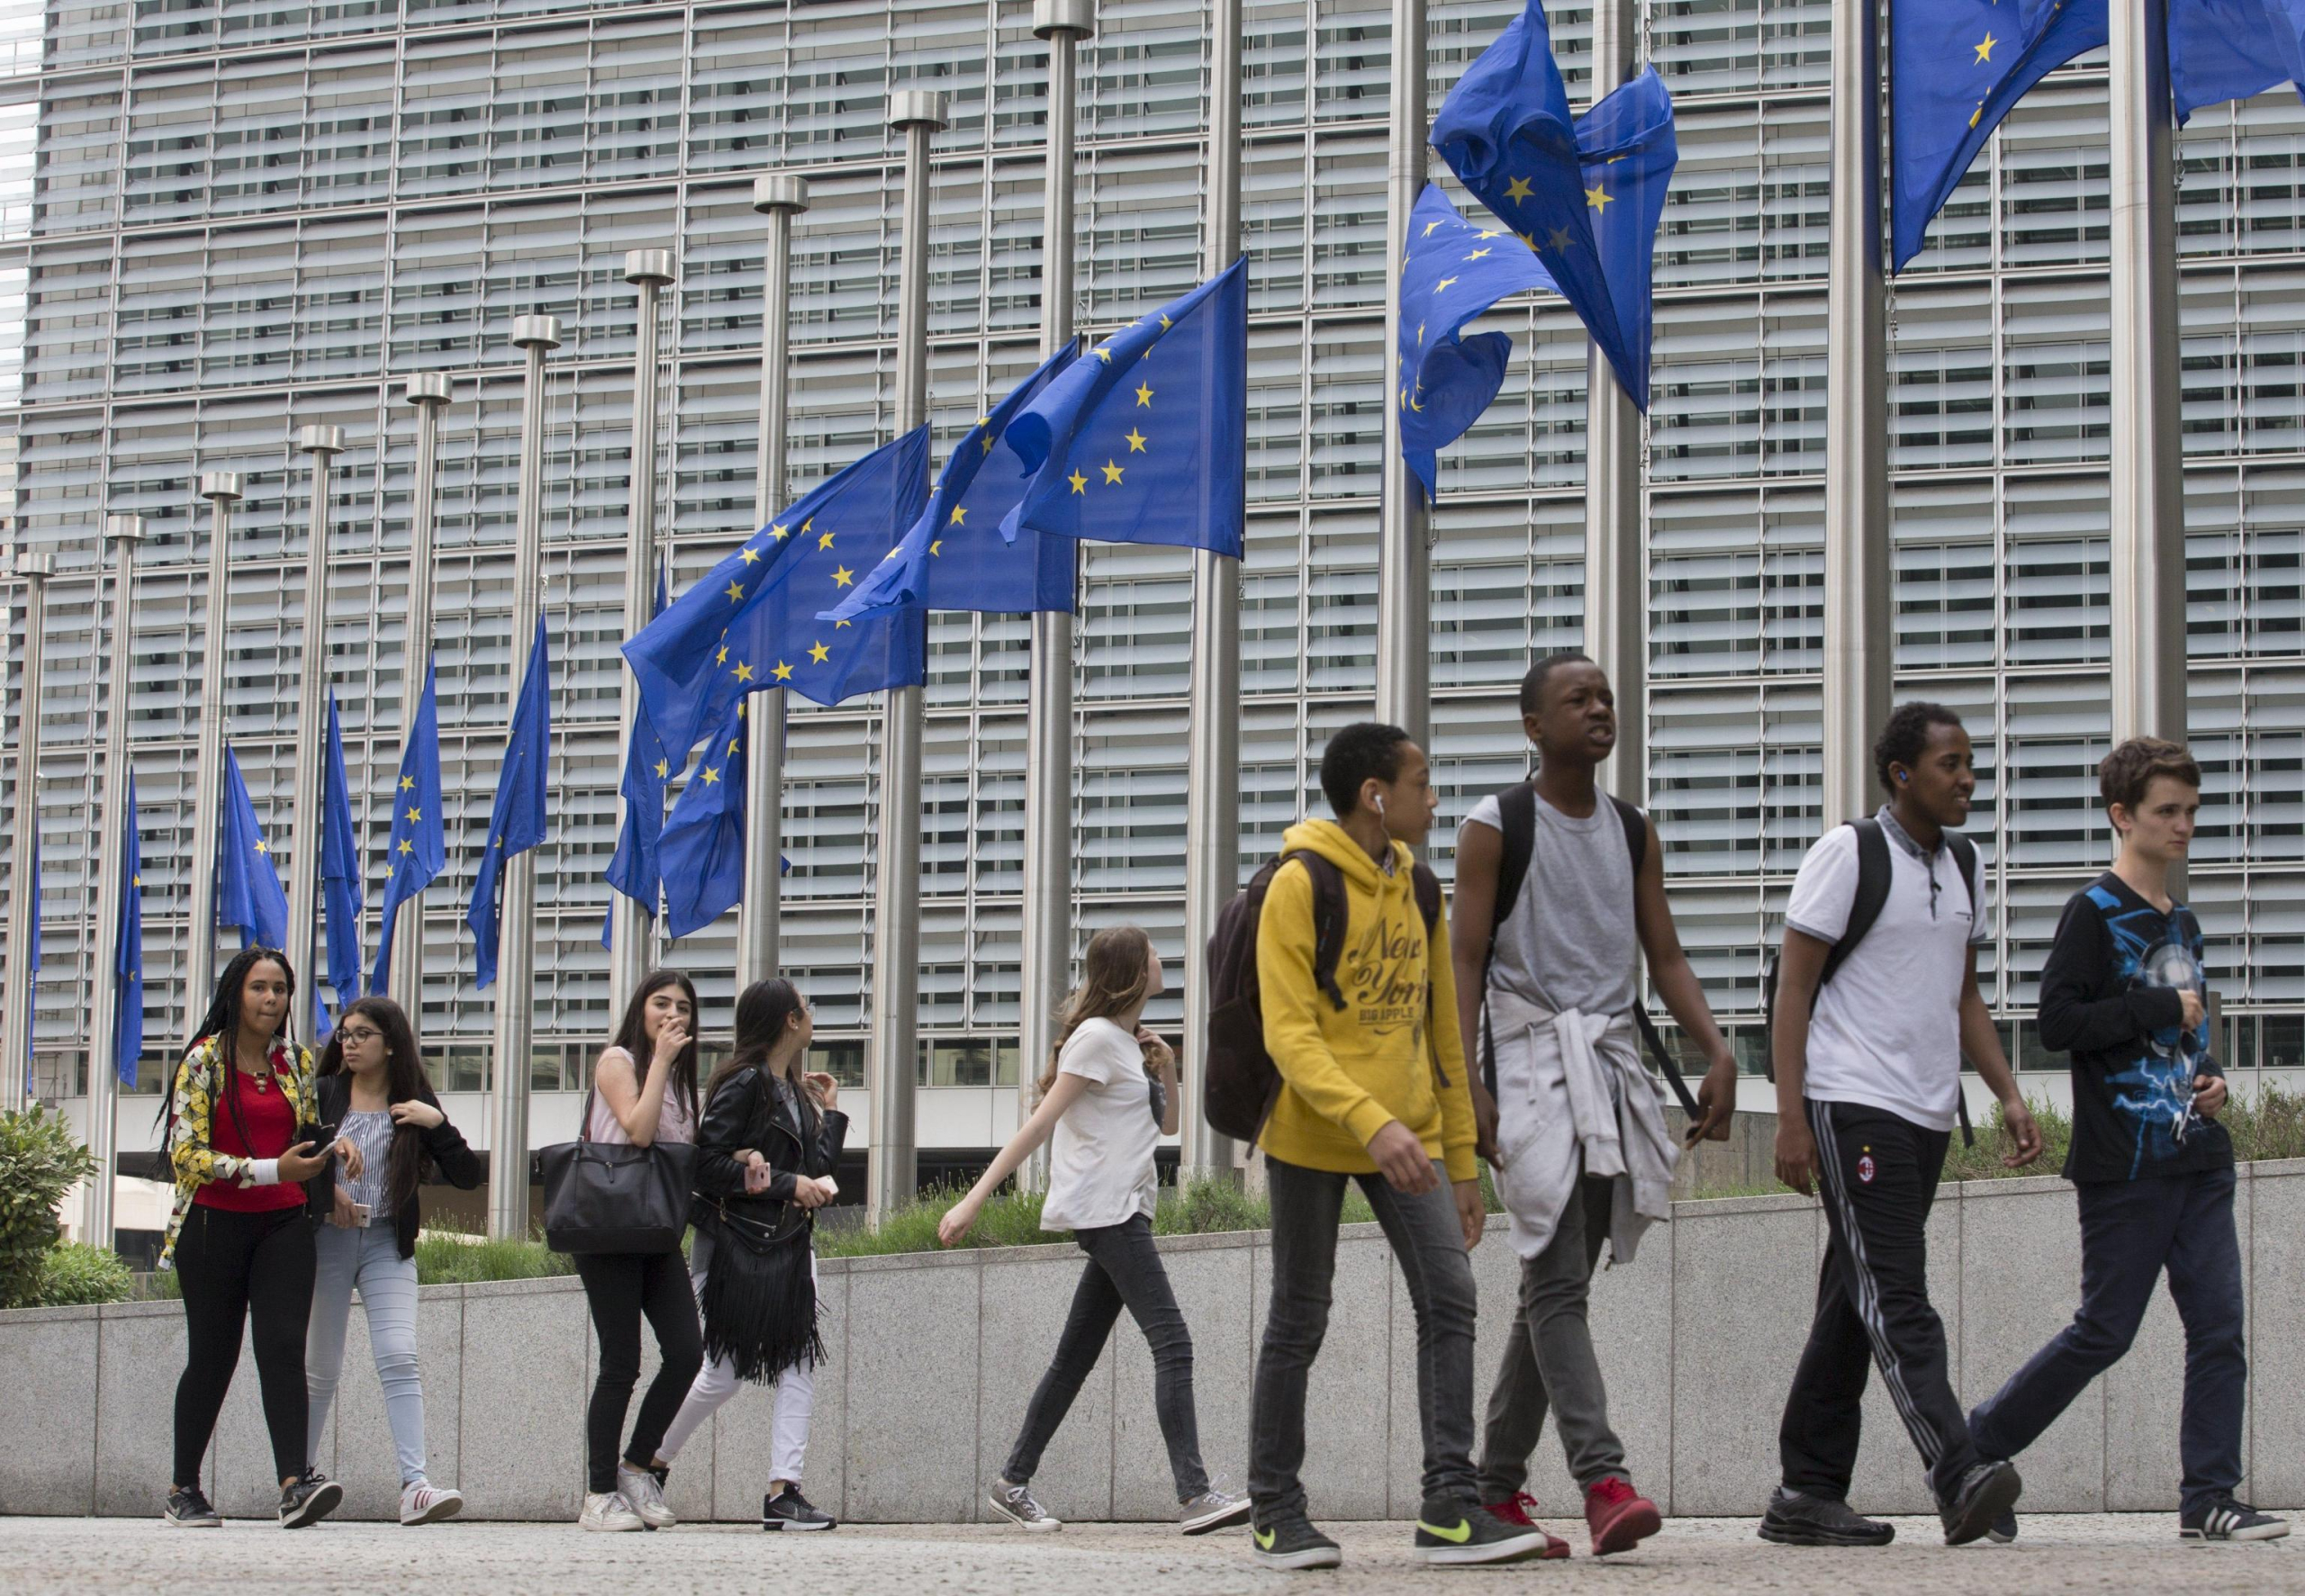 Un gruppo di giovani cammina davanti alle bandiere dell'Unione europea abbassate a mezz'asta fuori dall'edificio che ospita la sede della Commissione europea, a Bruxelles, in Belgio. (Foto ANSA, EPA/OLIVIER HOSLET)